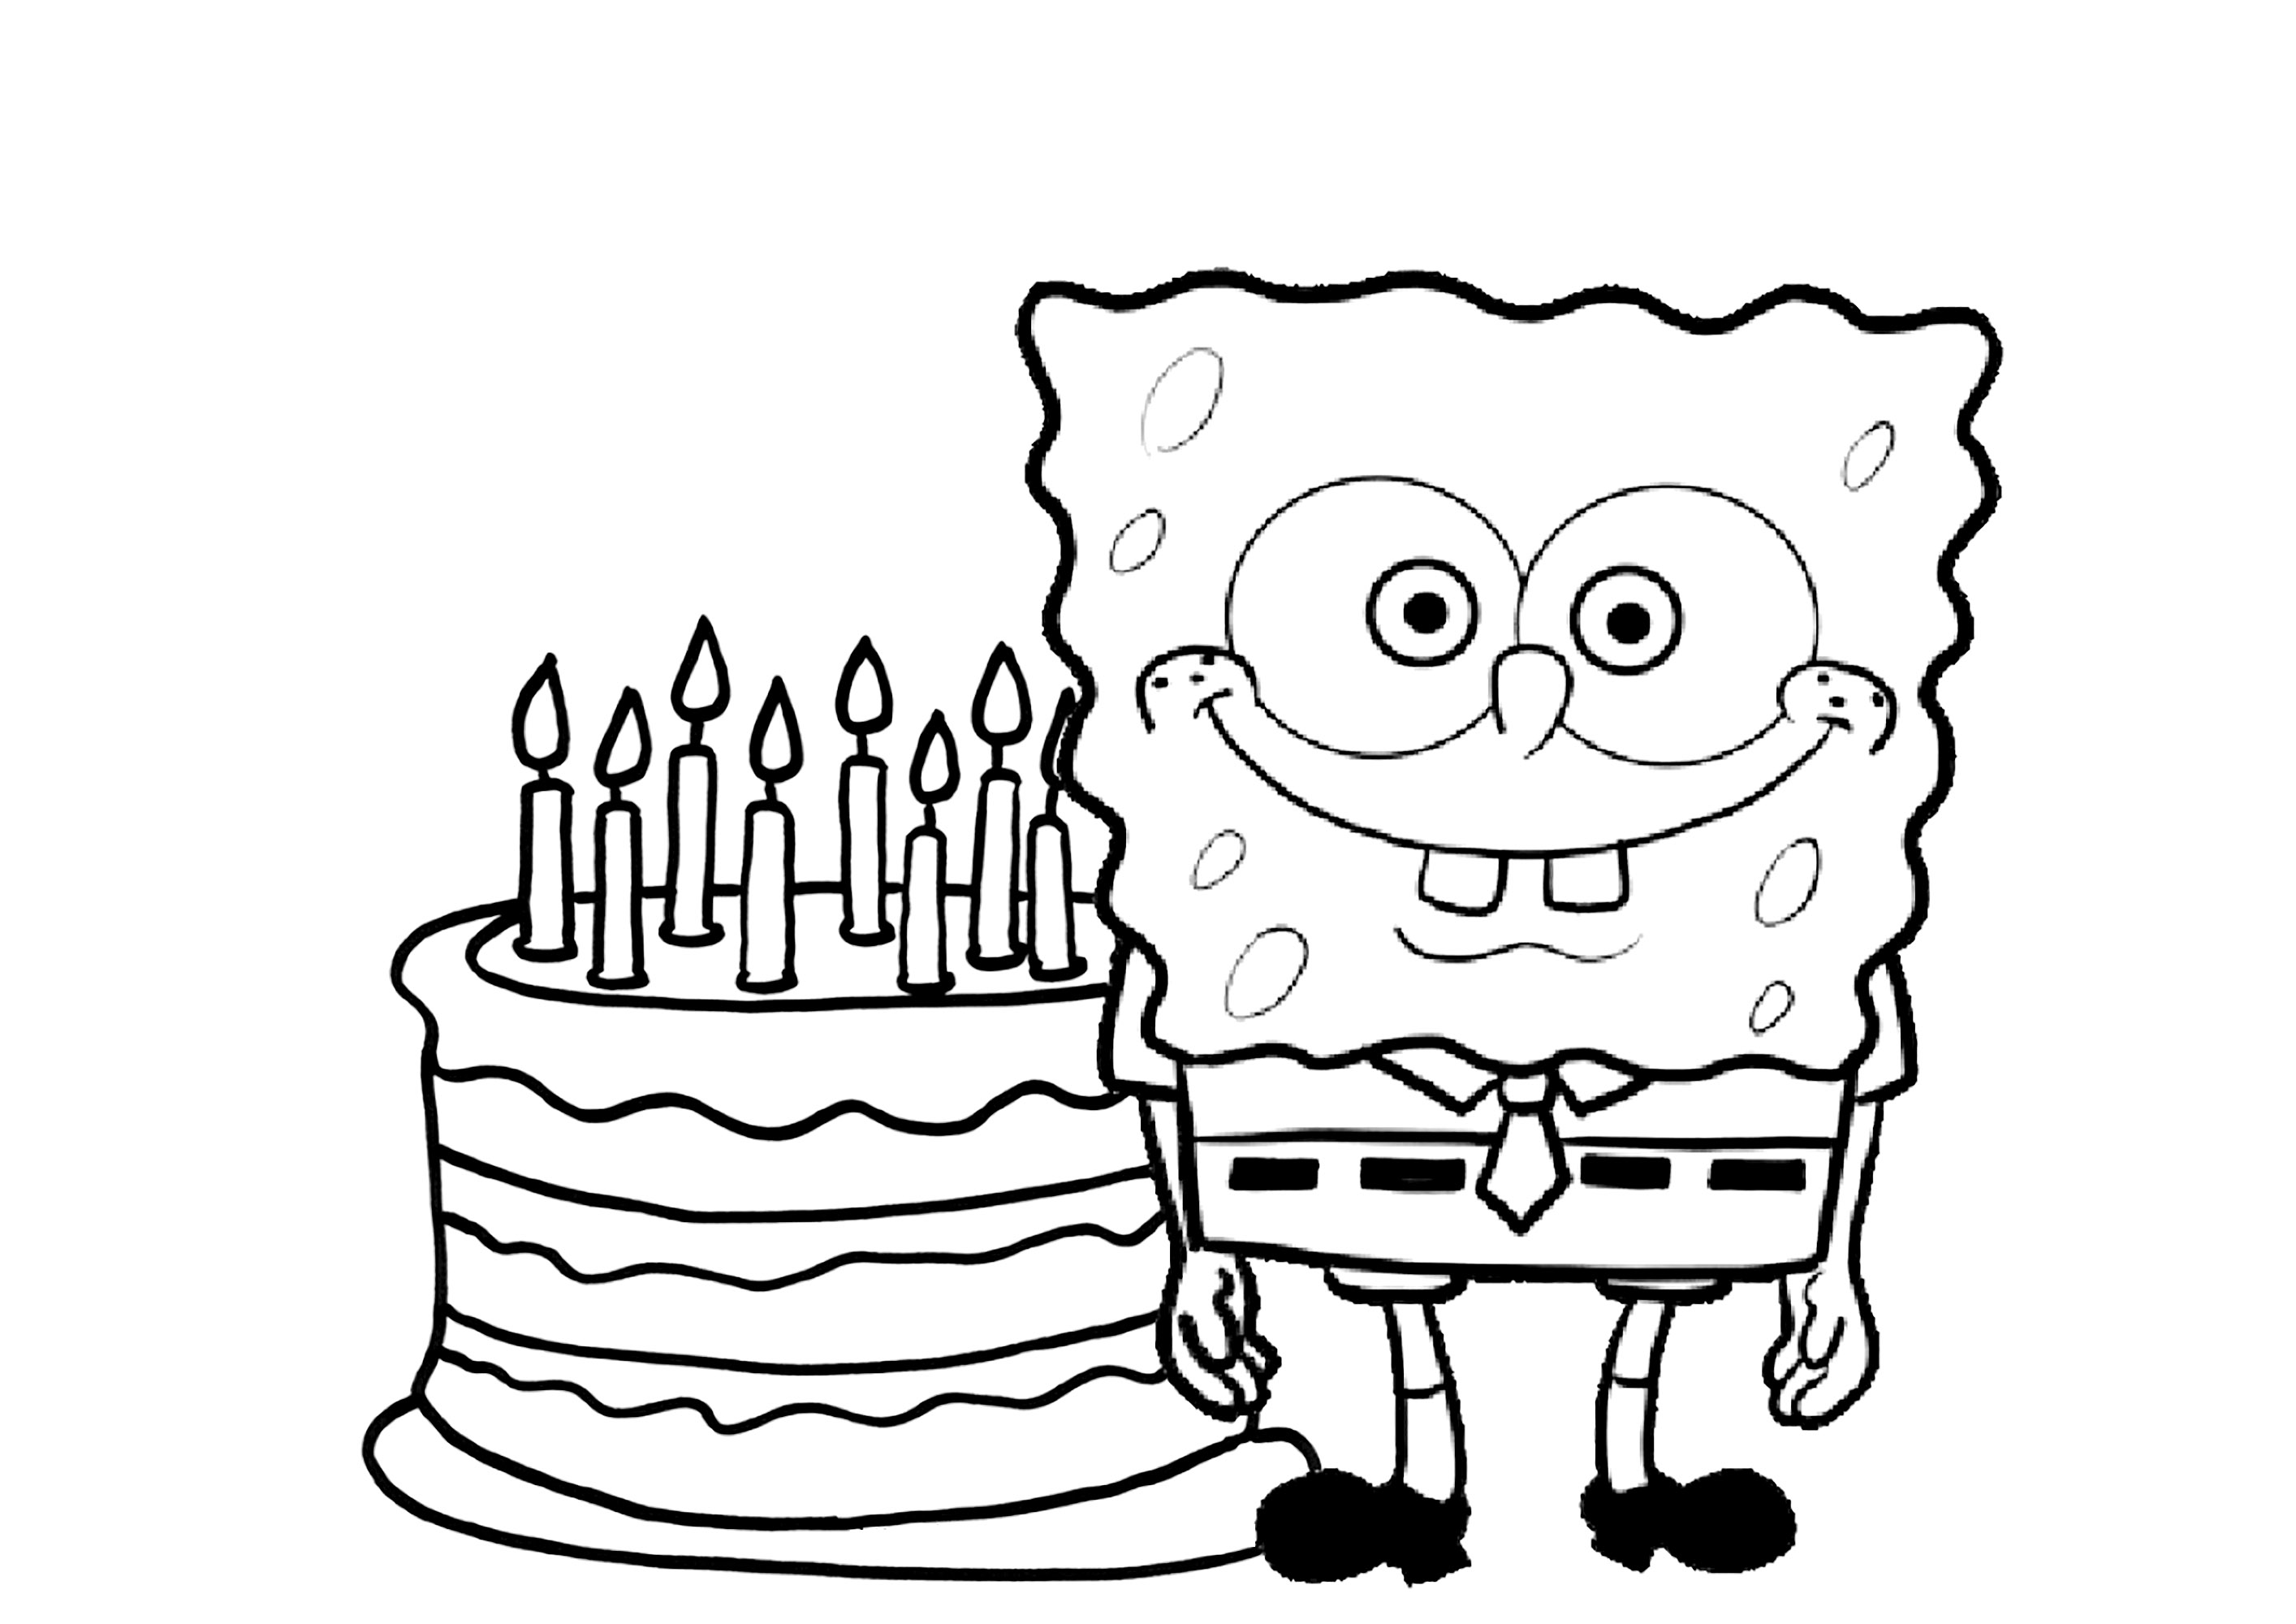 It's Sponge. Bob's birthday !